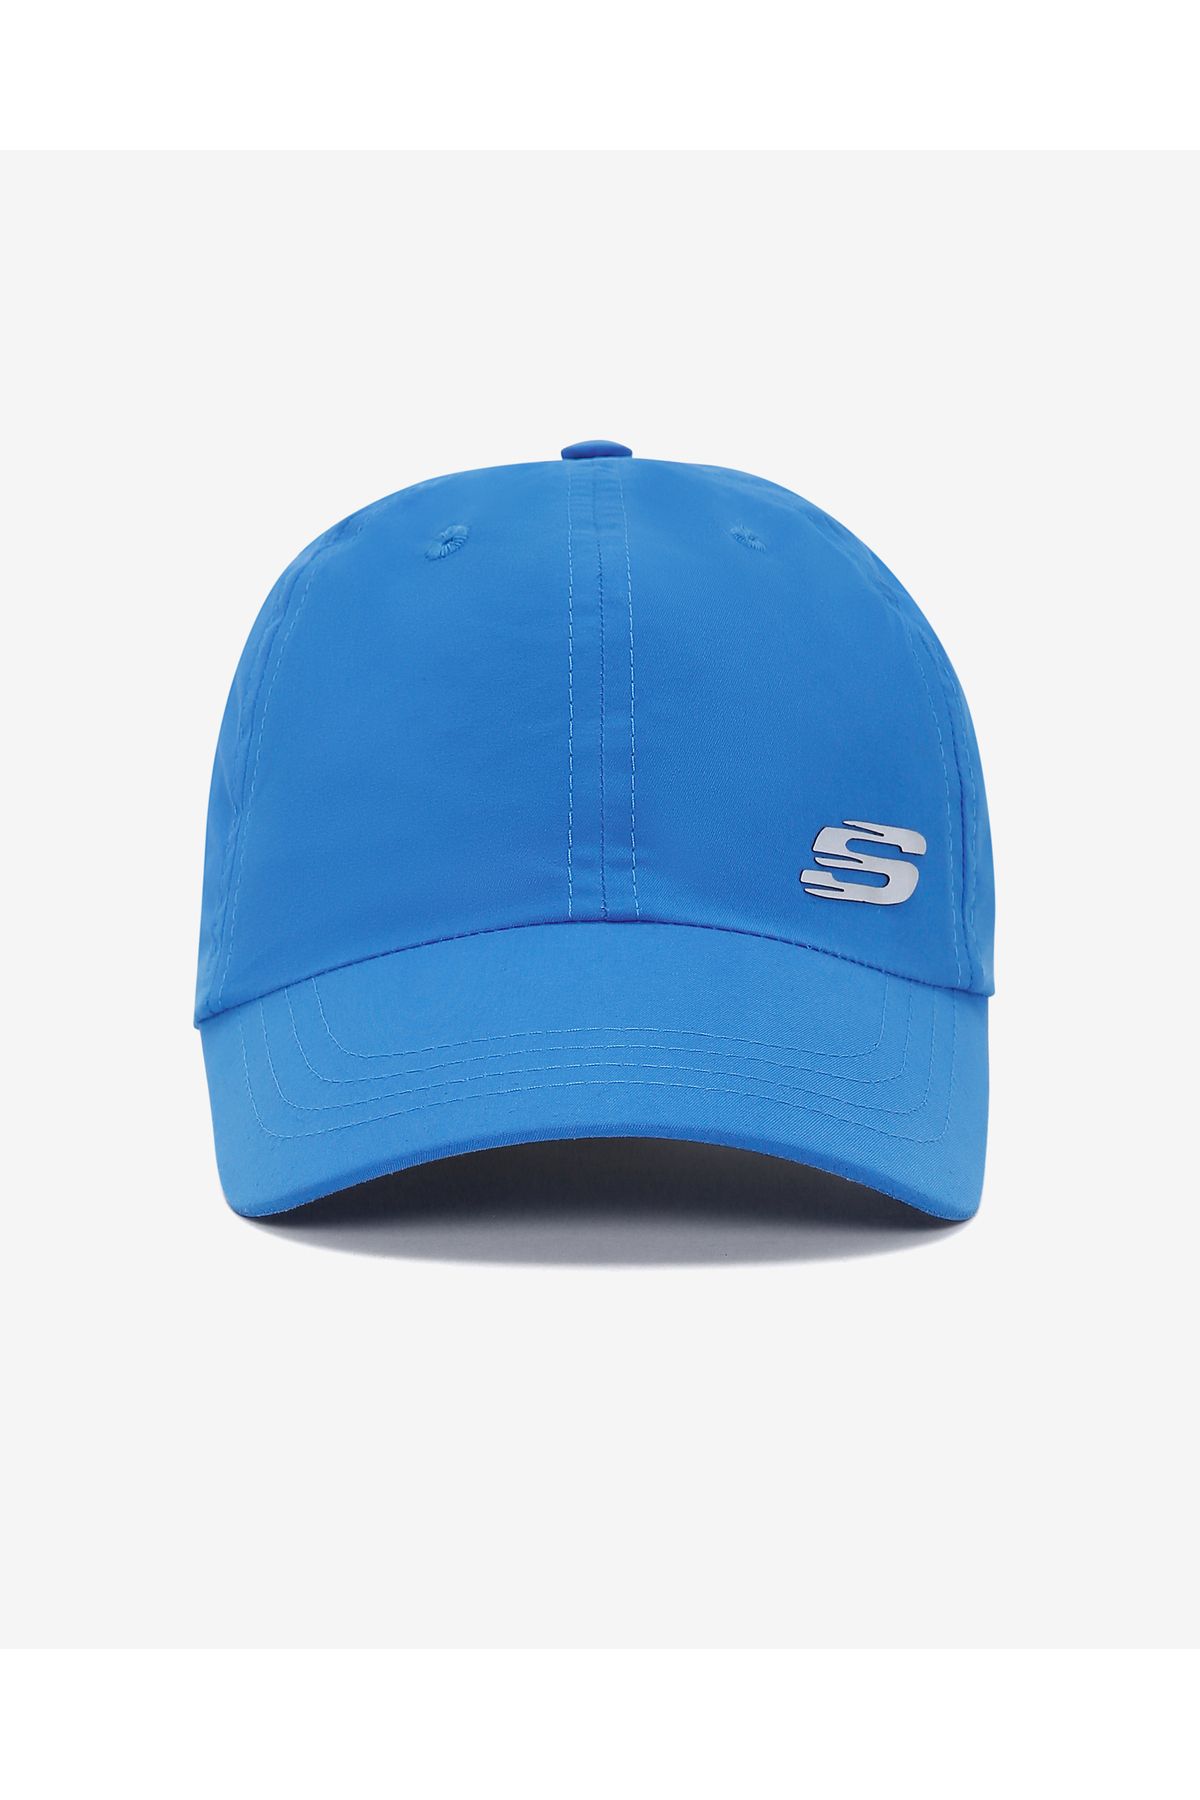 Skechers W Summer Acc Cap Cap Kadın Mavi Şapka S231480-400